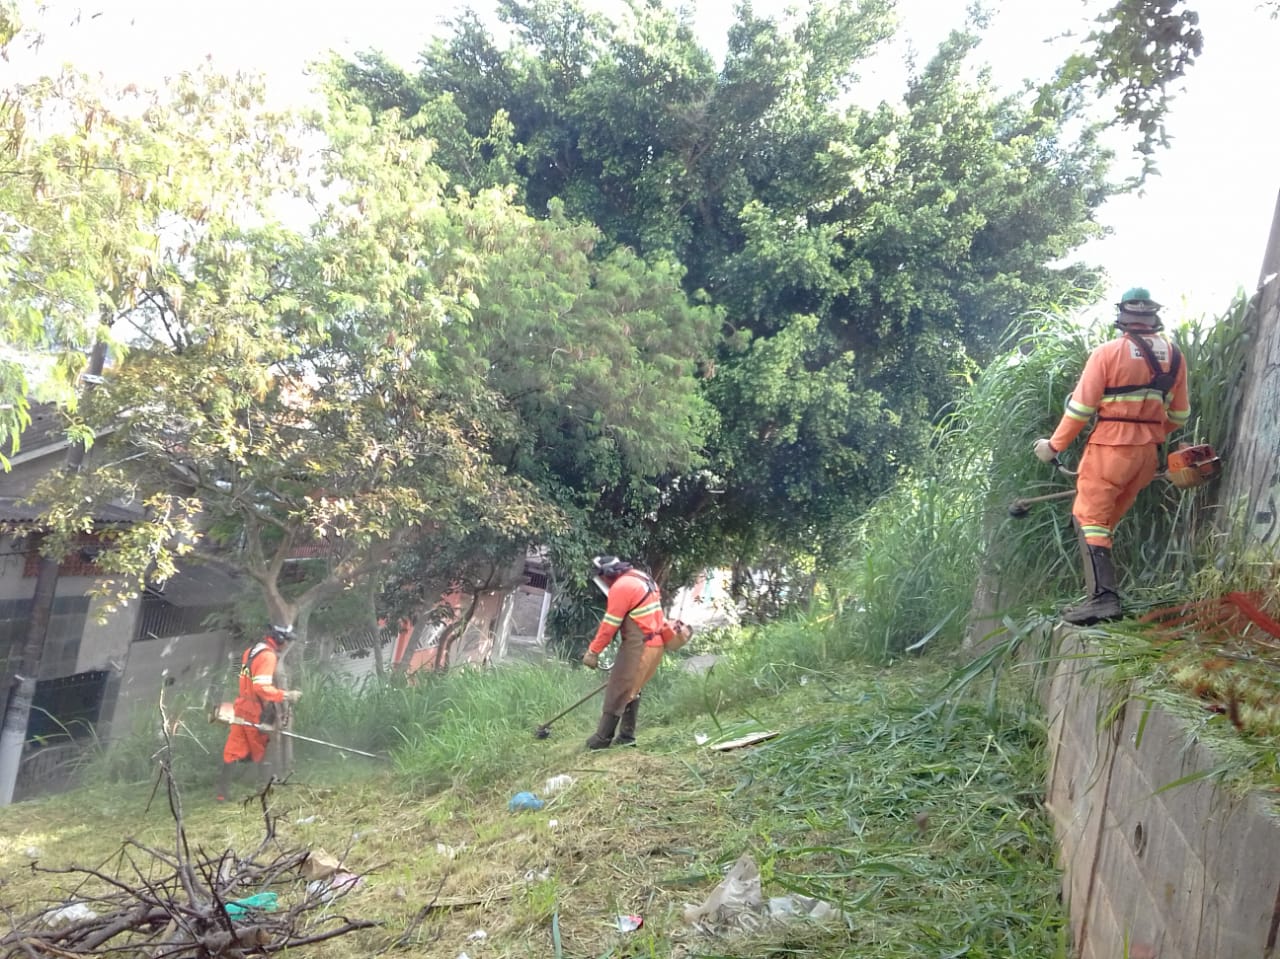 #PraCegoVer - Trabalhadores da Subprefeitura cortam grama e mato na encosta que termina em um muro. Ao fundo, há casas e árvores.